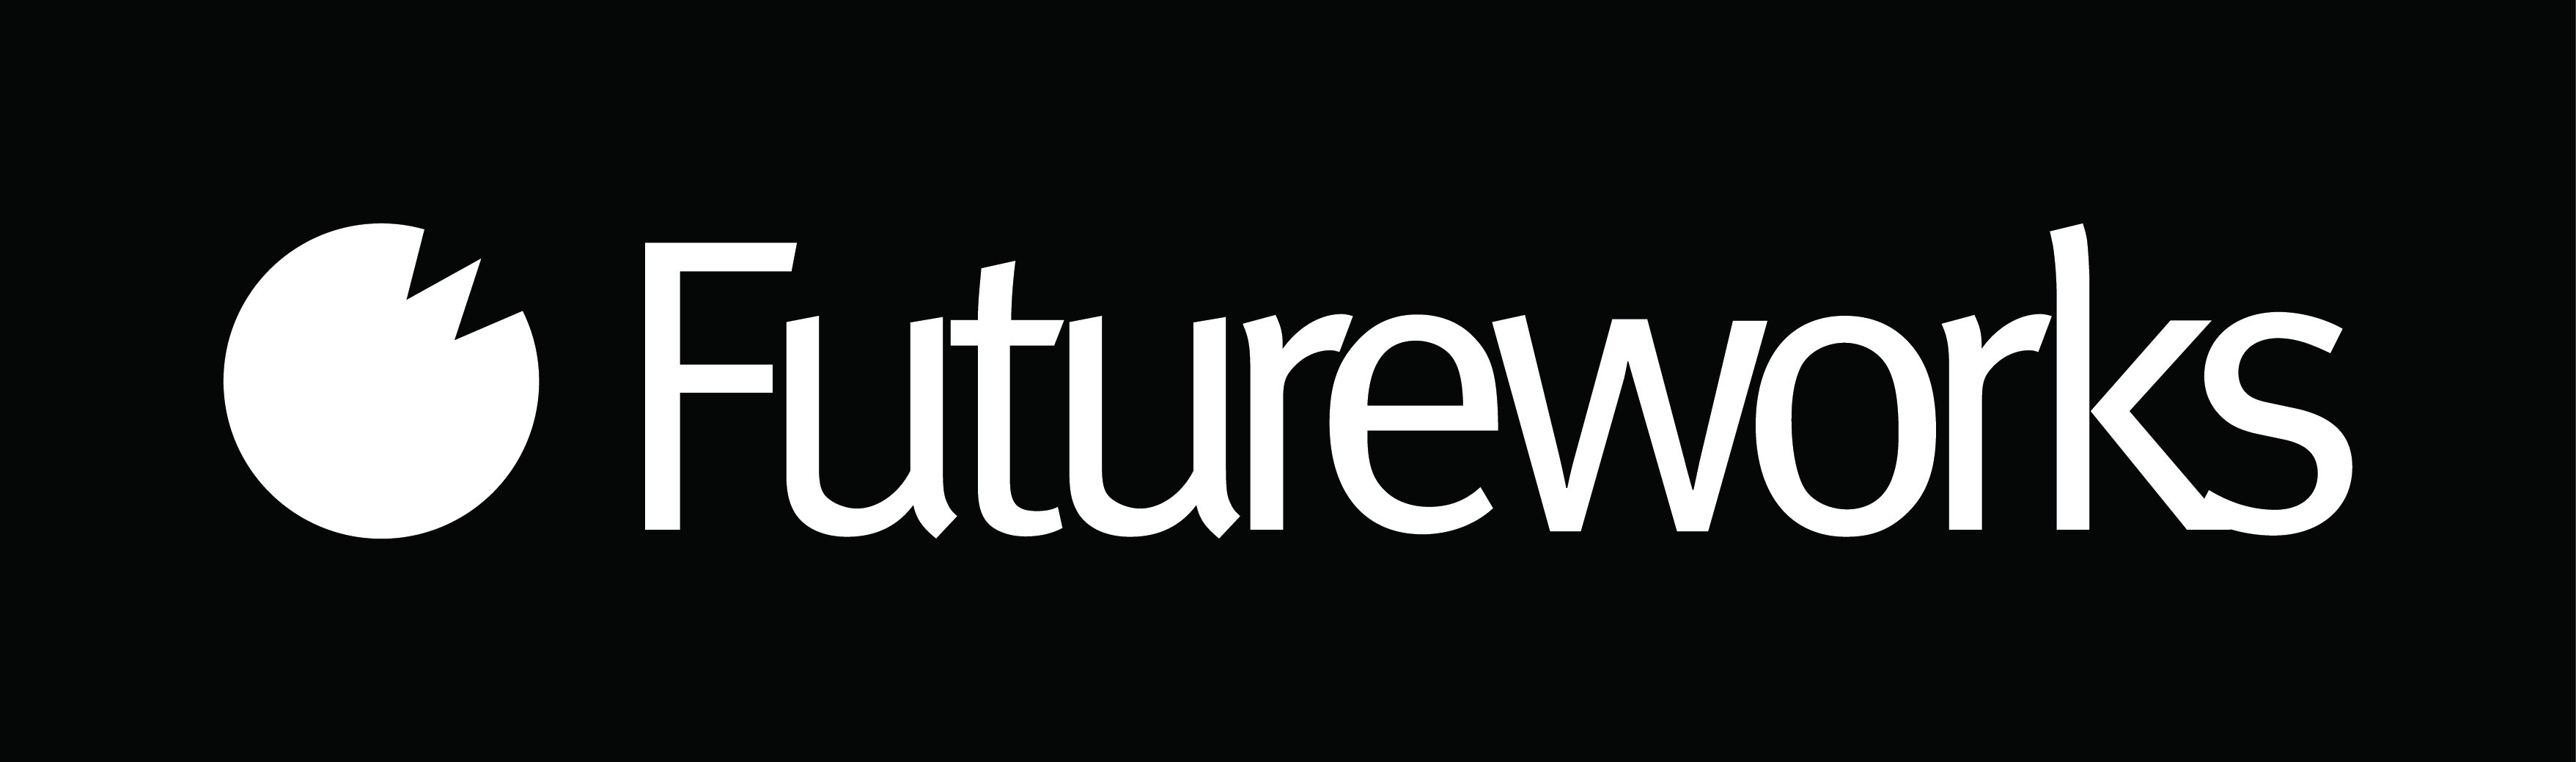 Futureworks | United Kingdom